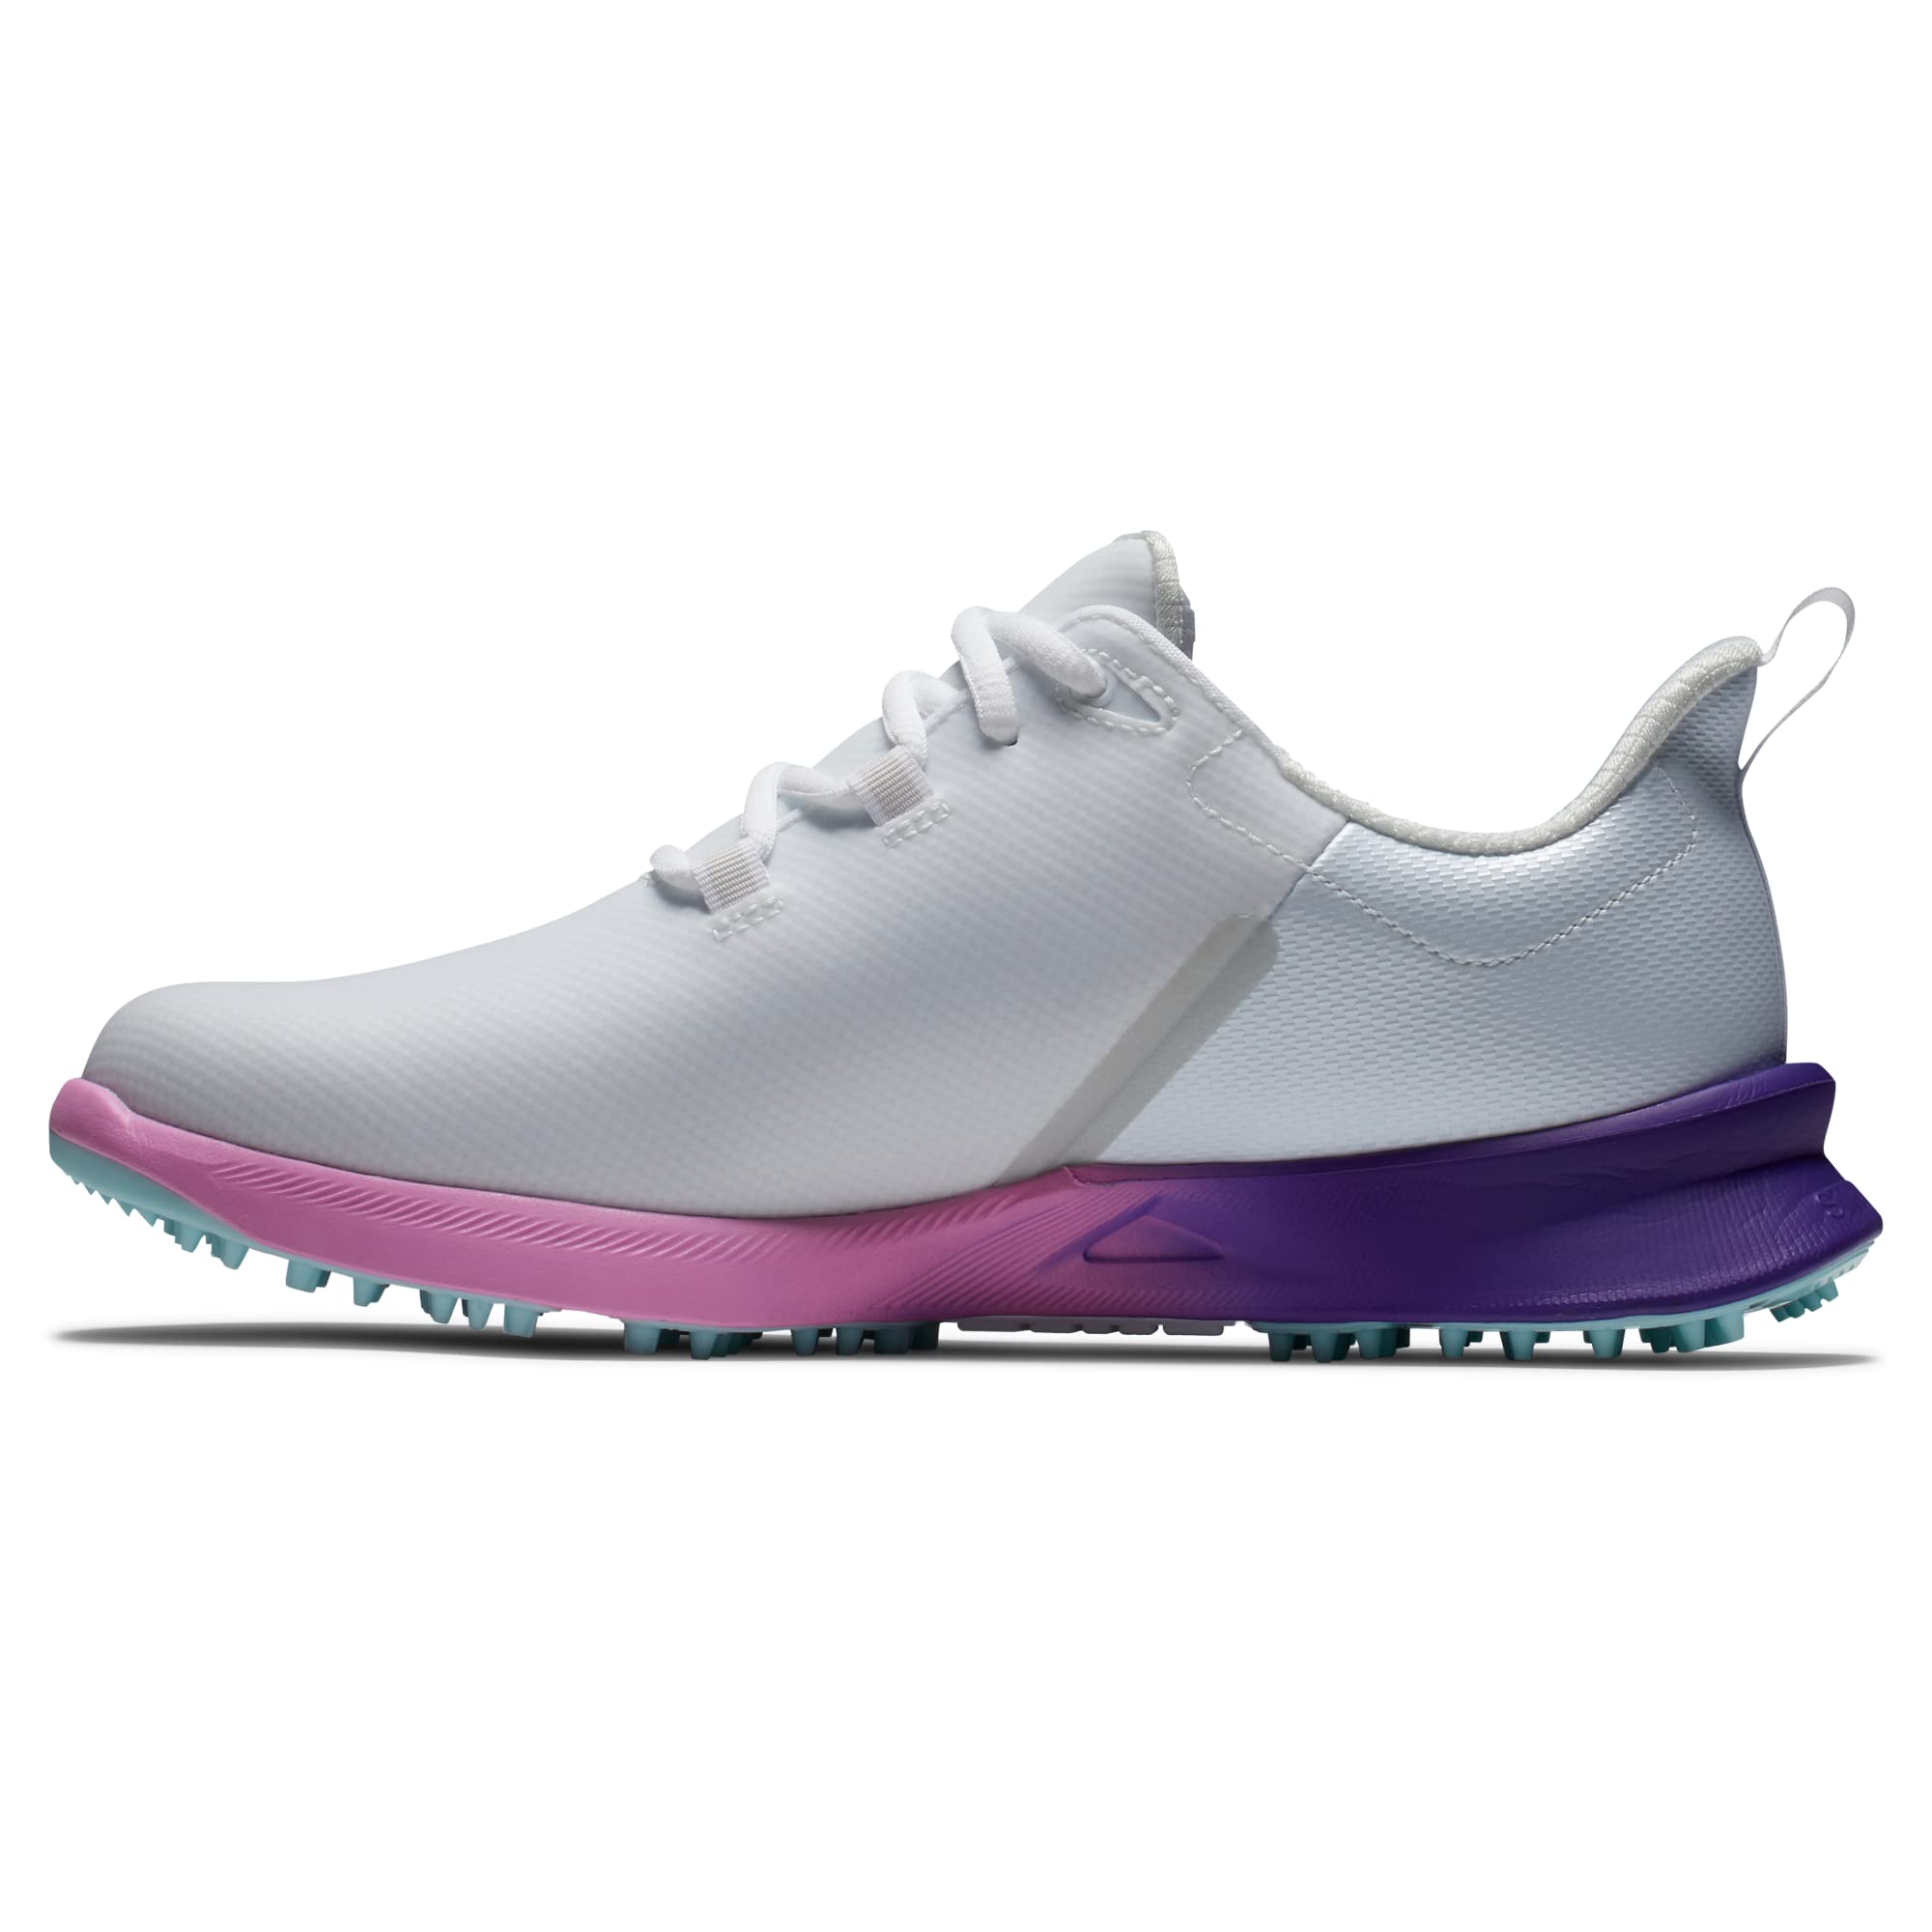 FootJoy Women's FJ Fuel Sport Golf Shoe, White/Pink/Purple, 8